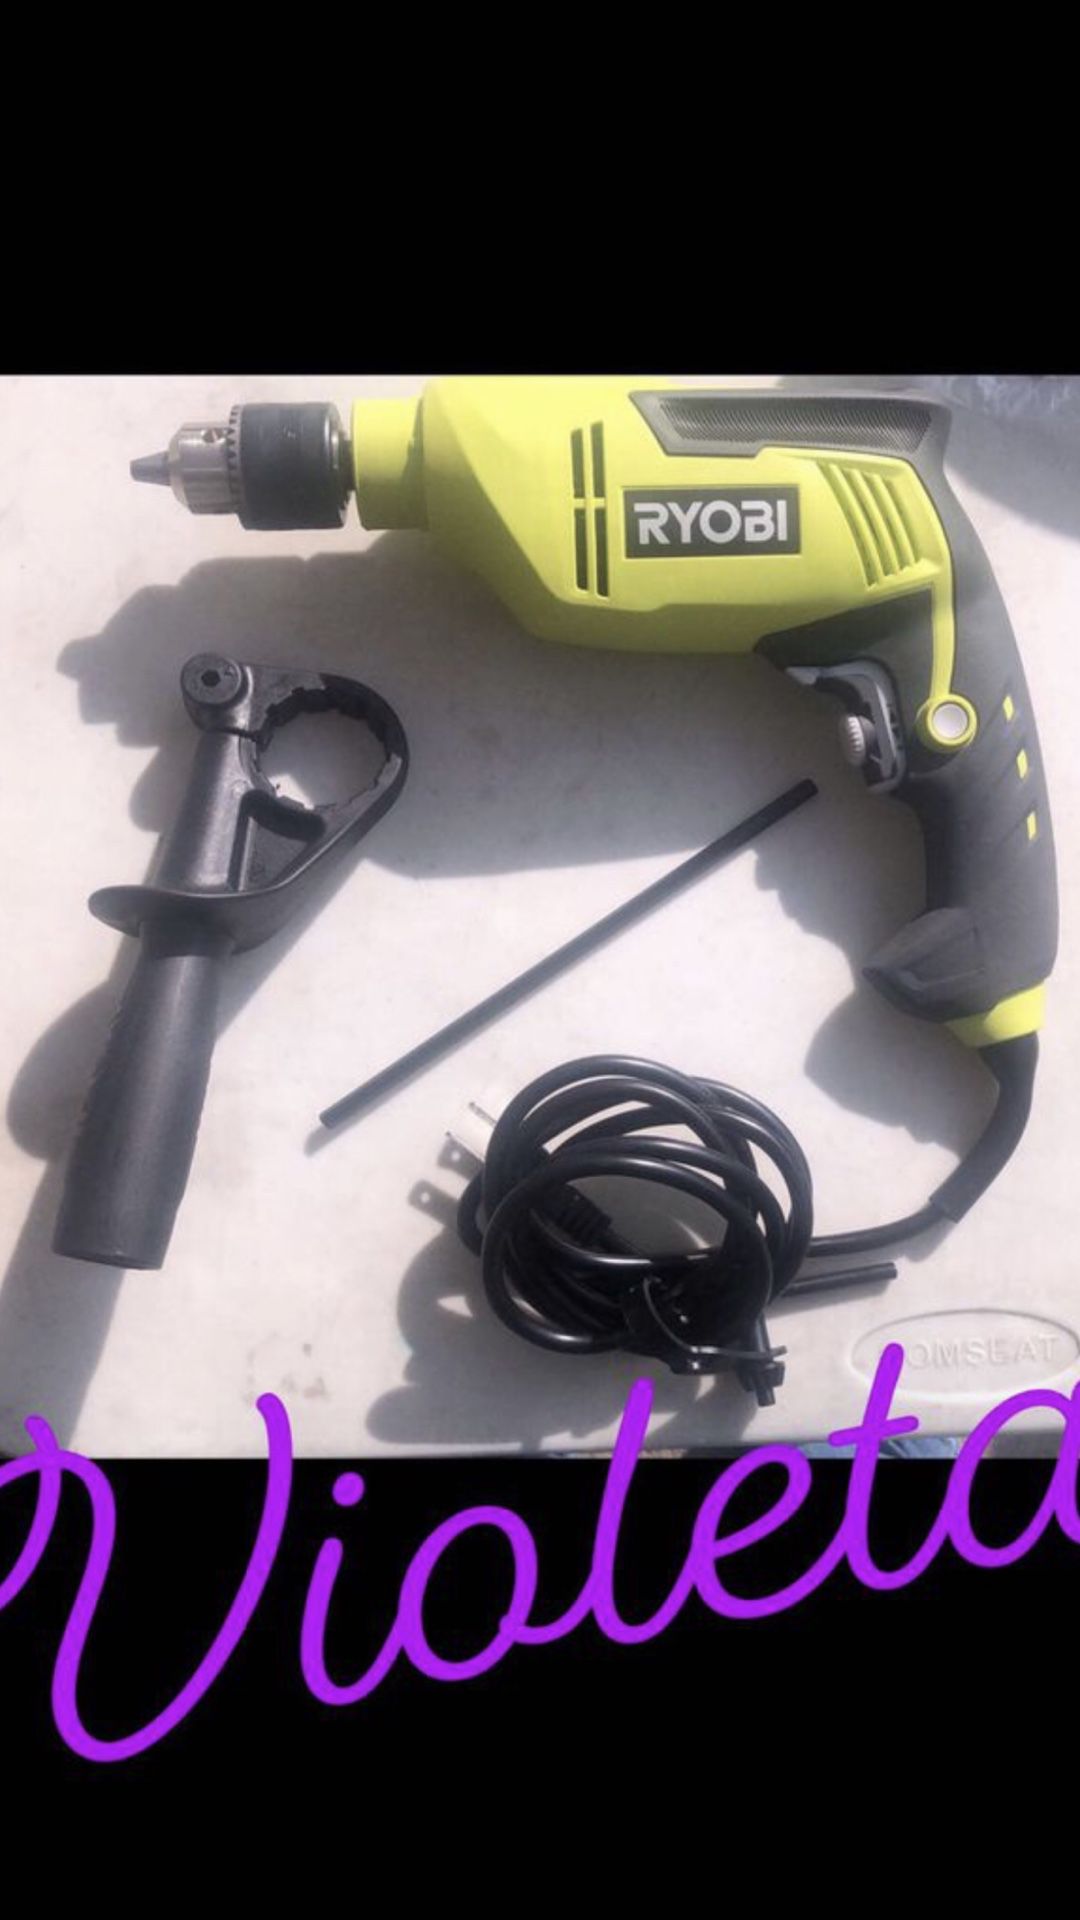 Ryobi hammer drill